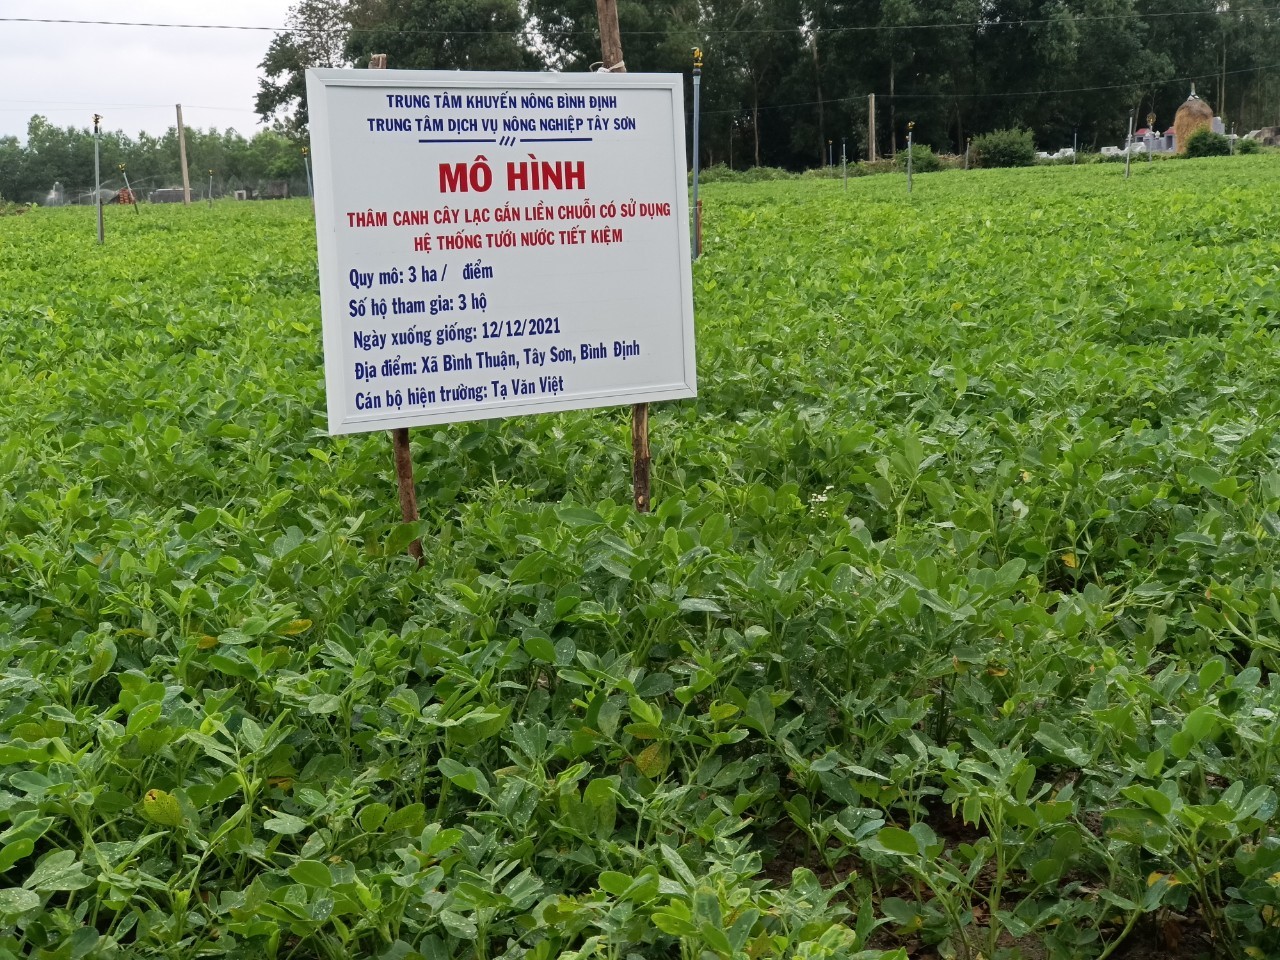 Công nghệ tưới tiết kiệm nước trong sản xuất nông nghiệp vùng đồng bào dân  tộc thiểu số tỉnh Ninh Thuận  Cổng thông tin Khoa học và Công nghệ